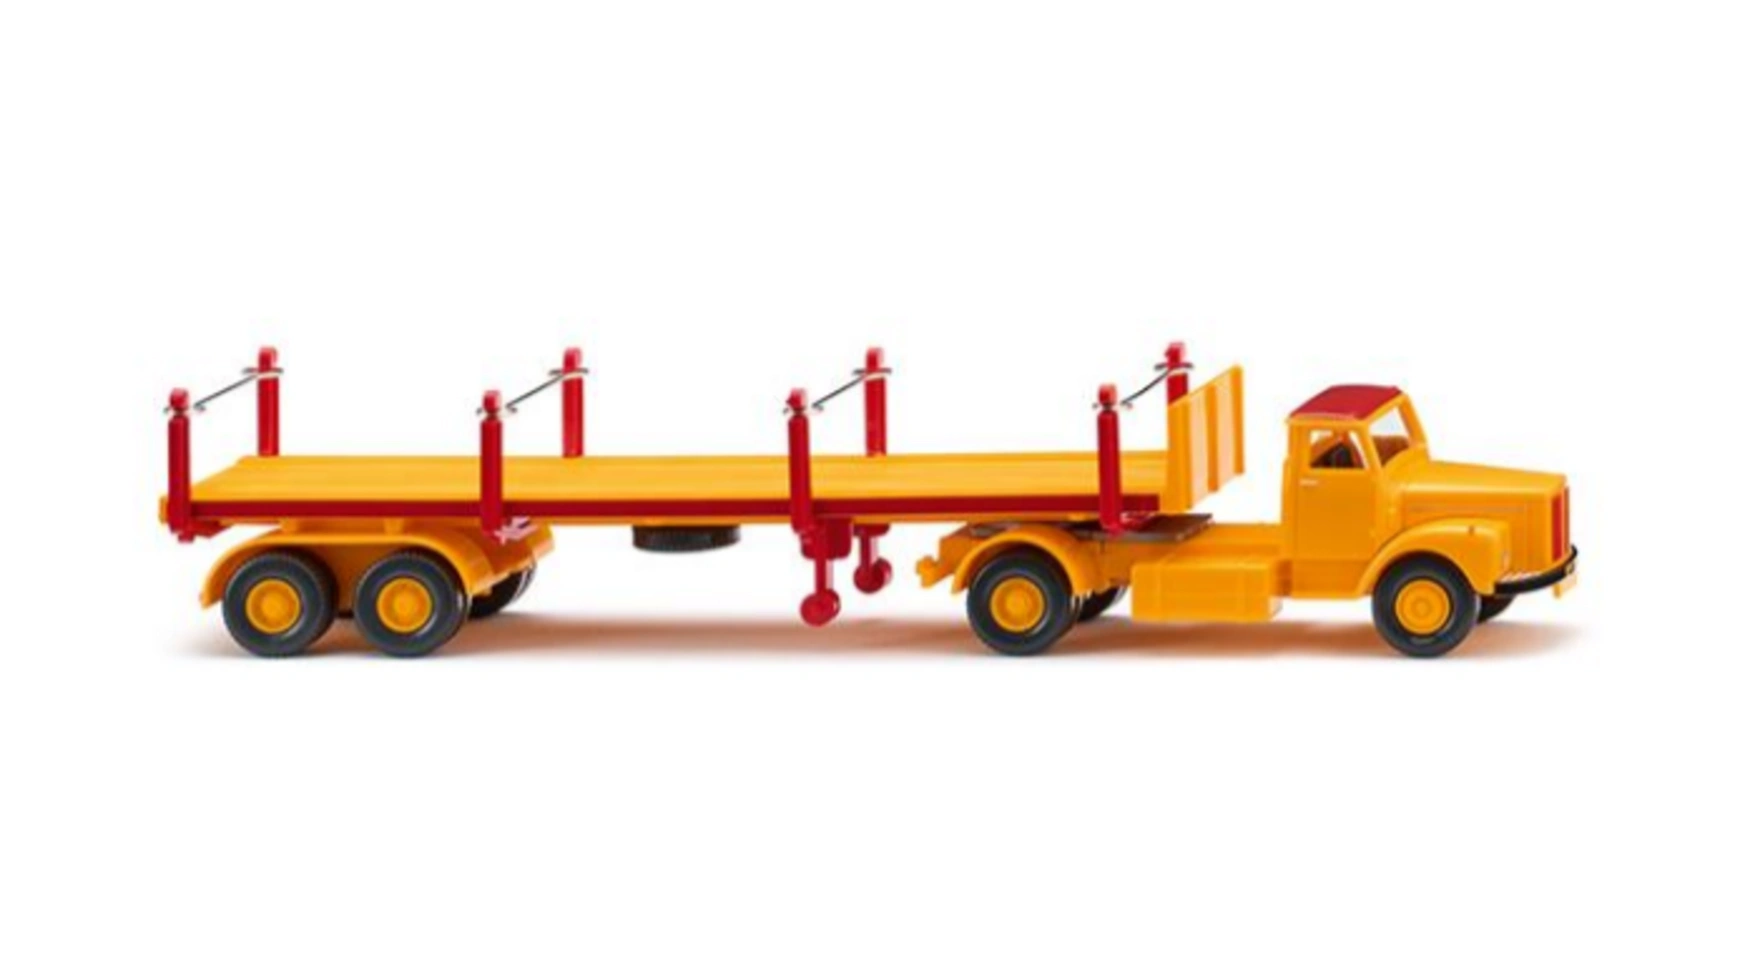 3883ит грузовик scania k730 topline imp Wiking Масштаб 1:87 грузовик (Scania) сигнально-желтый/карминно-красный